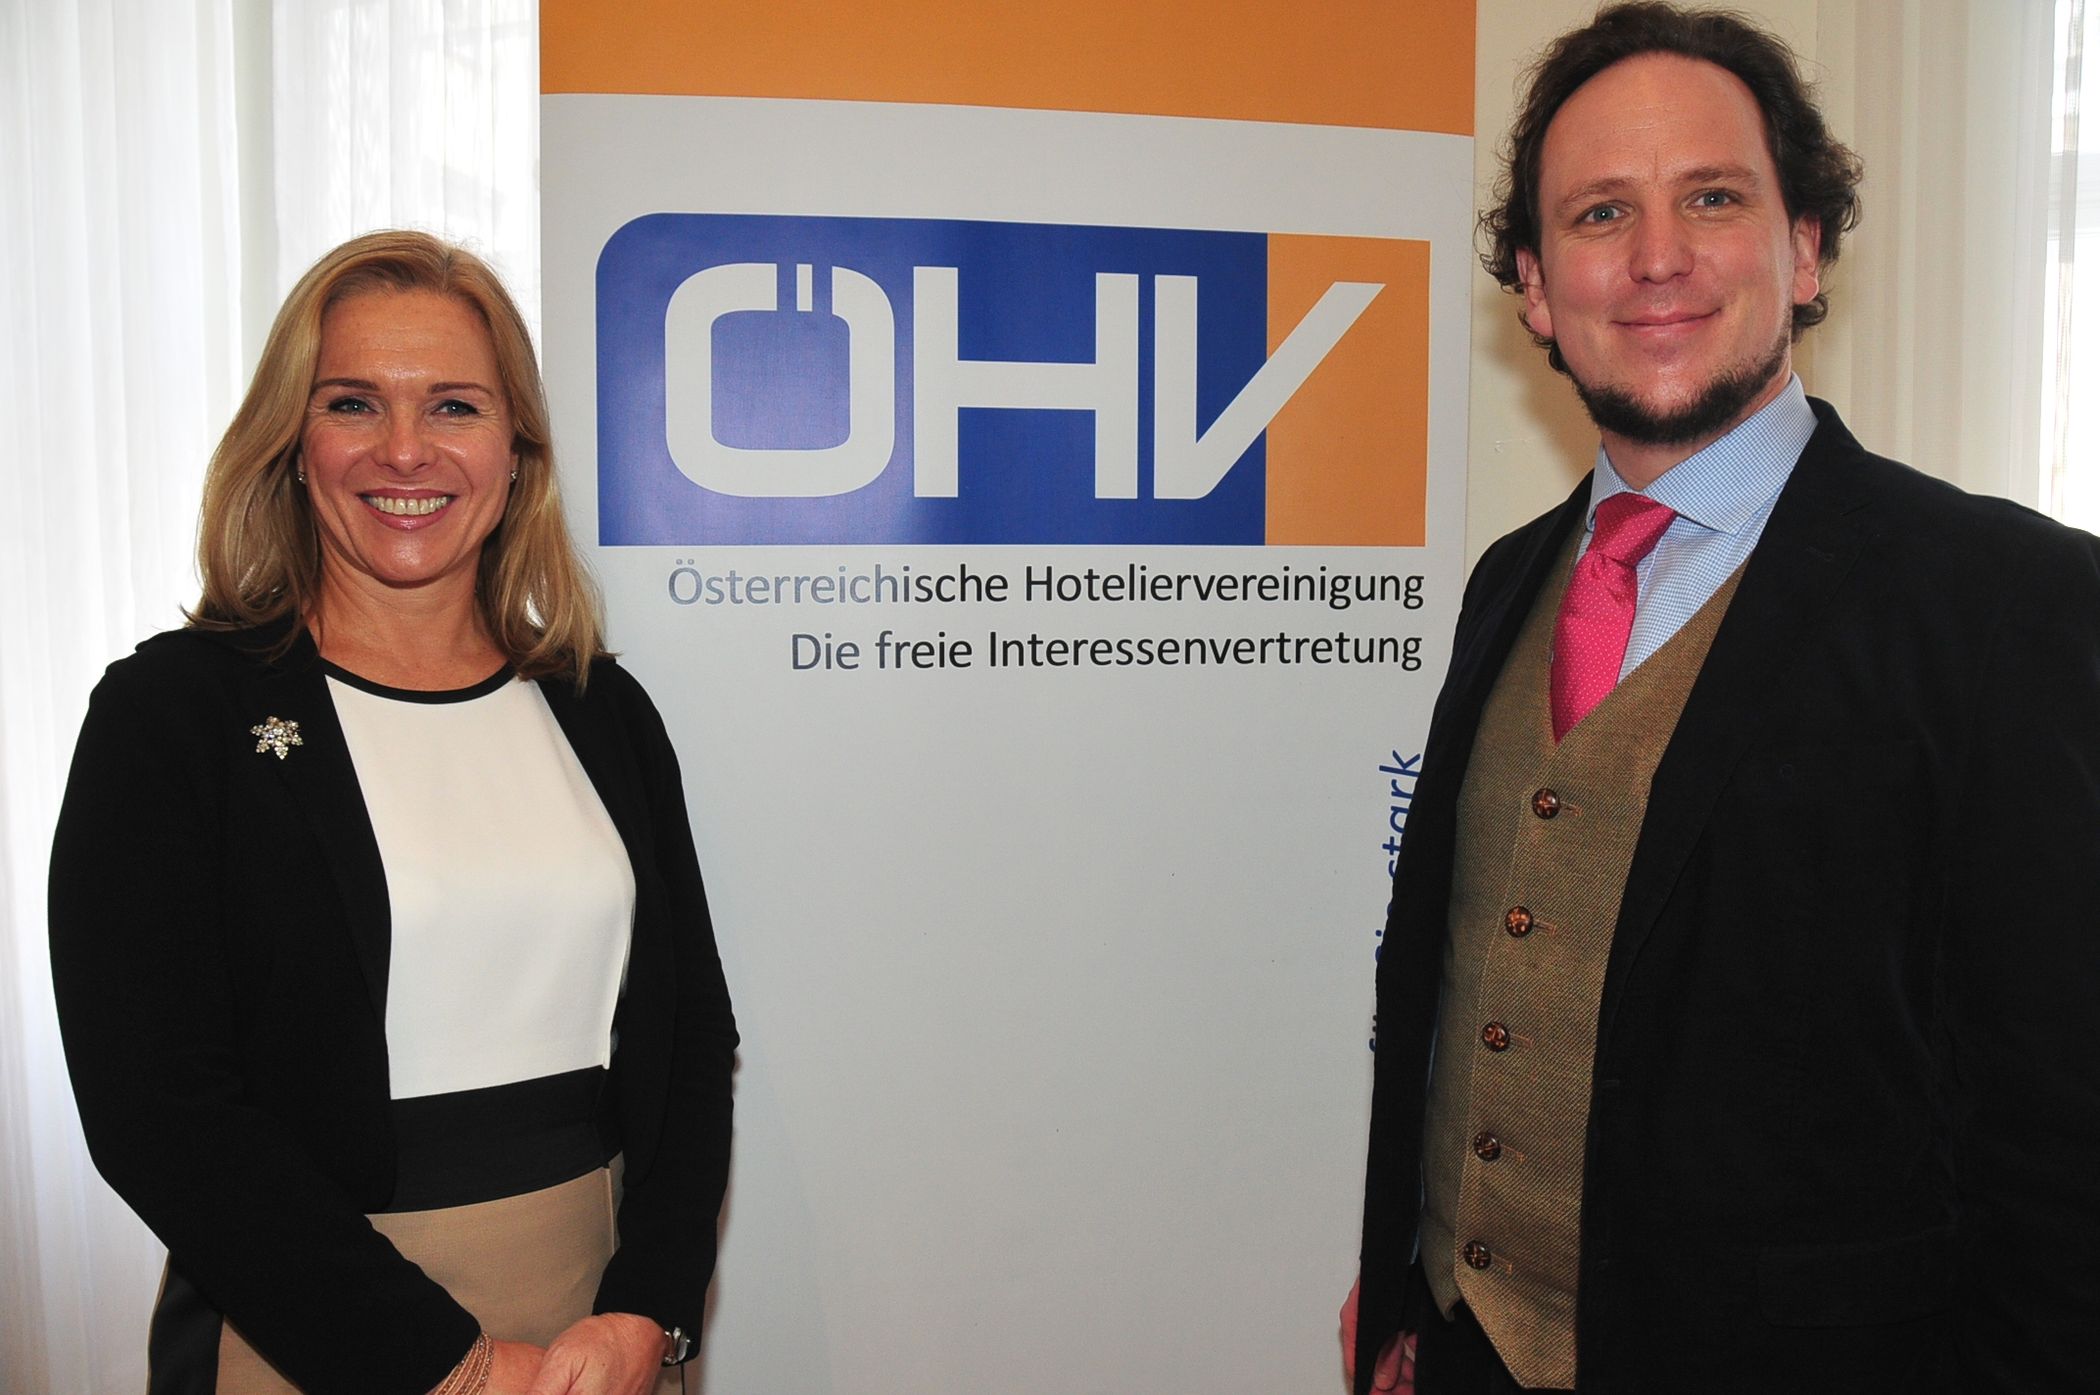 Die Österreichische Hoteliervereinigung hat eine neue Führung mit Michaela Reitterer und Gregor Hoch an der Spitze gewählt (Foto: fotodienst.at/S. Renlom)